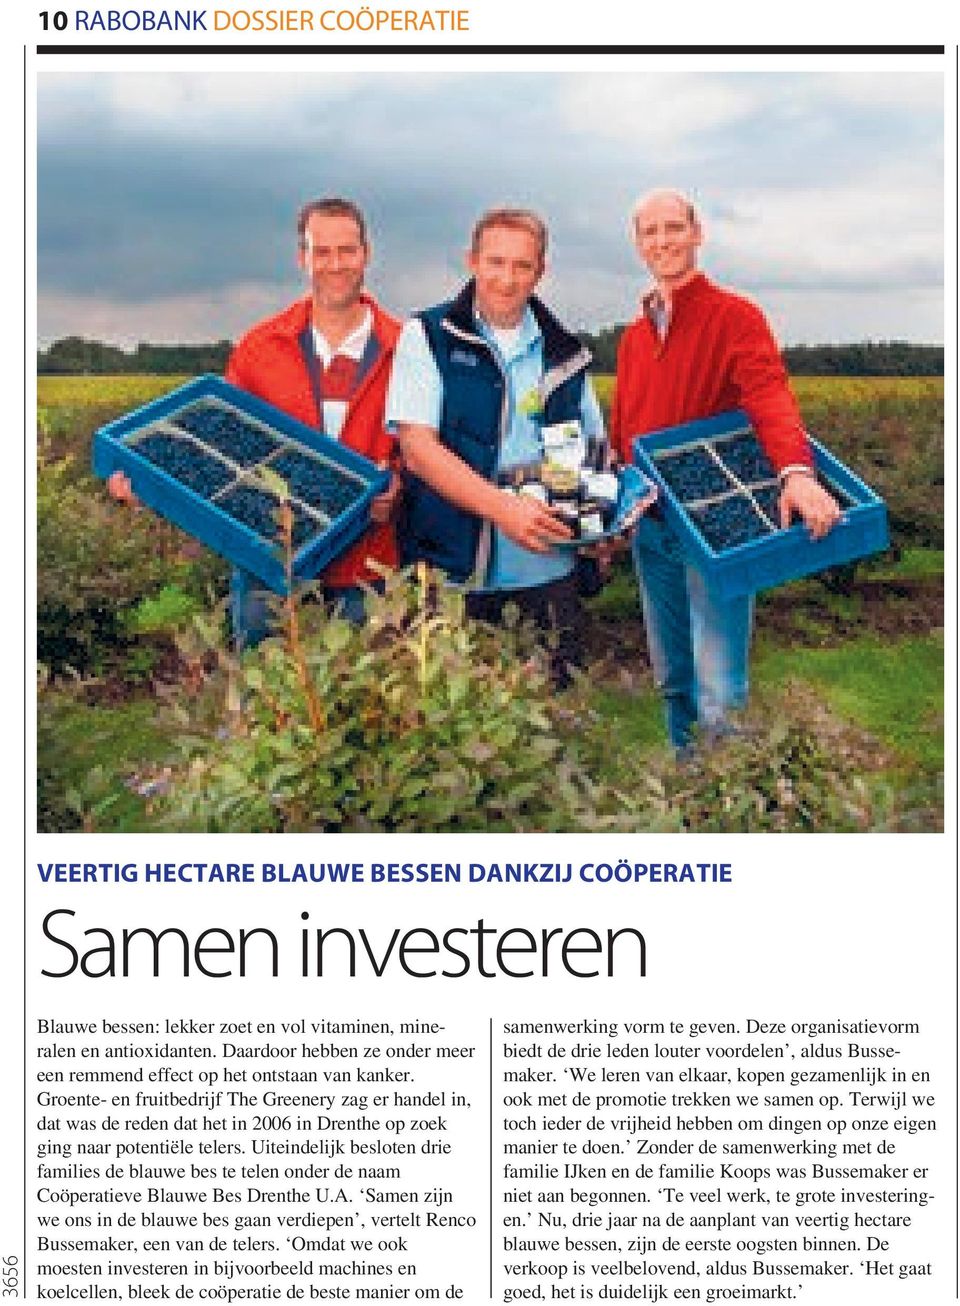 Groente- en fruitbedrijf The Greenery zag er handel in, dat was de reden dat het in 2006 in Drenthe op zoek ging naar potentiële telers.